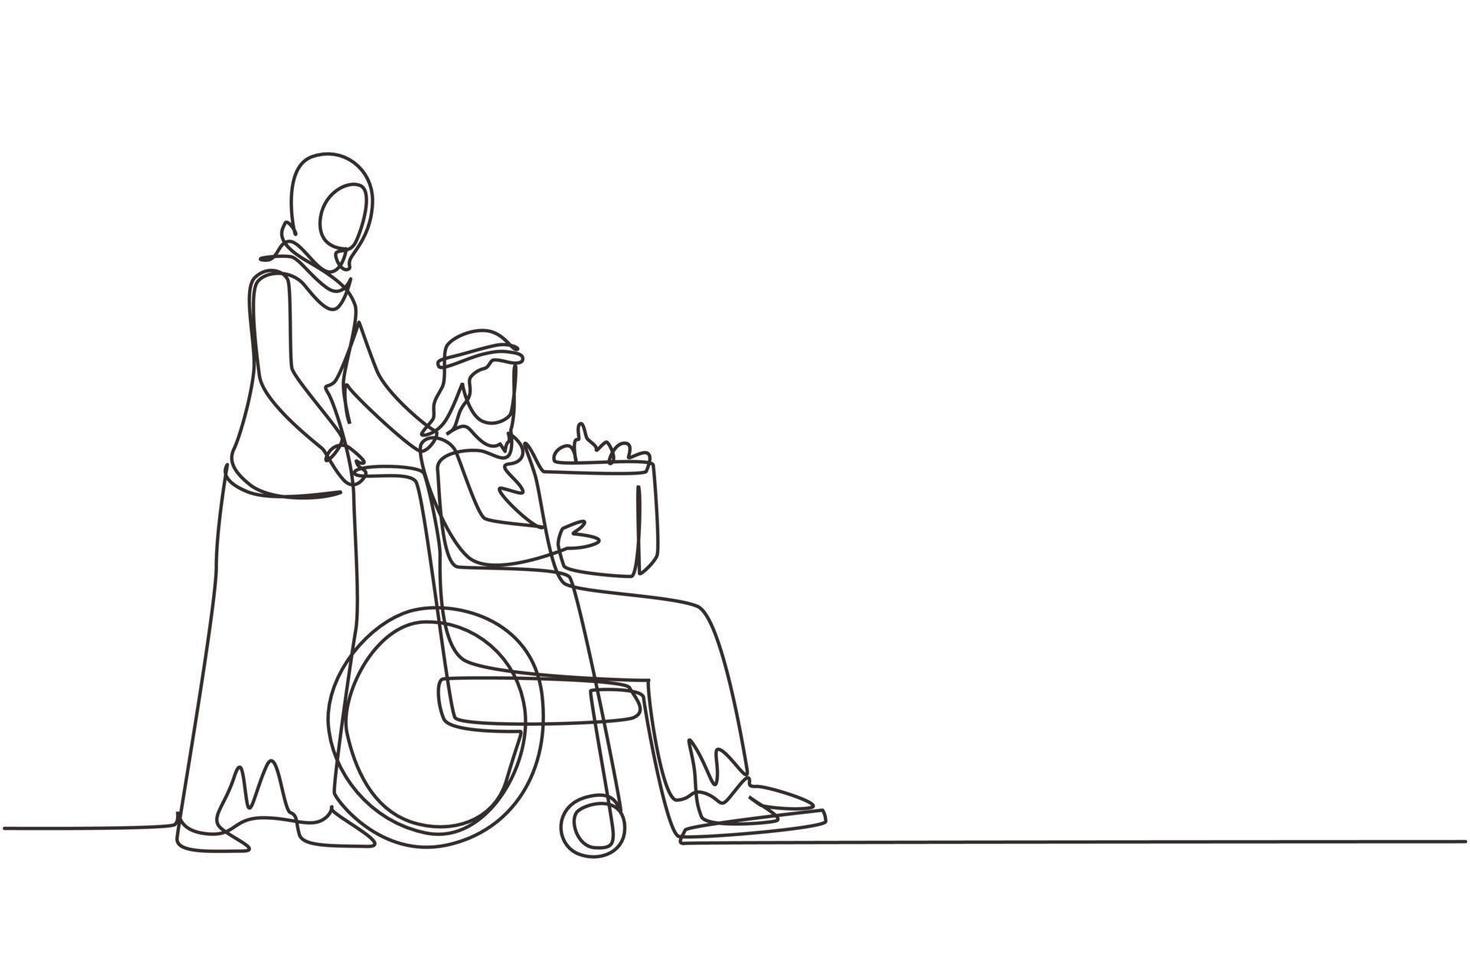 assistente sociale di disegno a linea continua singola che aiuta il vecchio su sedia a rotelle a fare la spesa. volontaria araba che si prende cura e cammina con un maschio anziano disabile per fare shopping. vettore di disegno a una linea